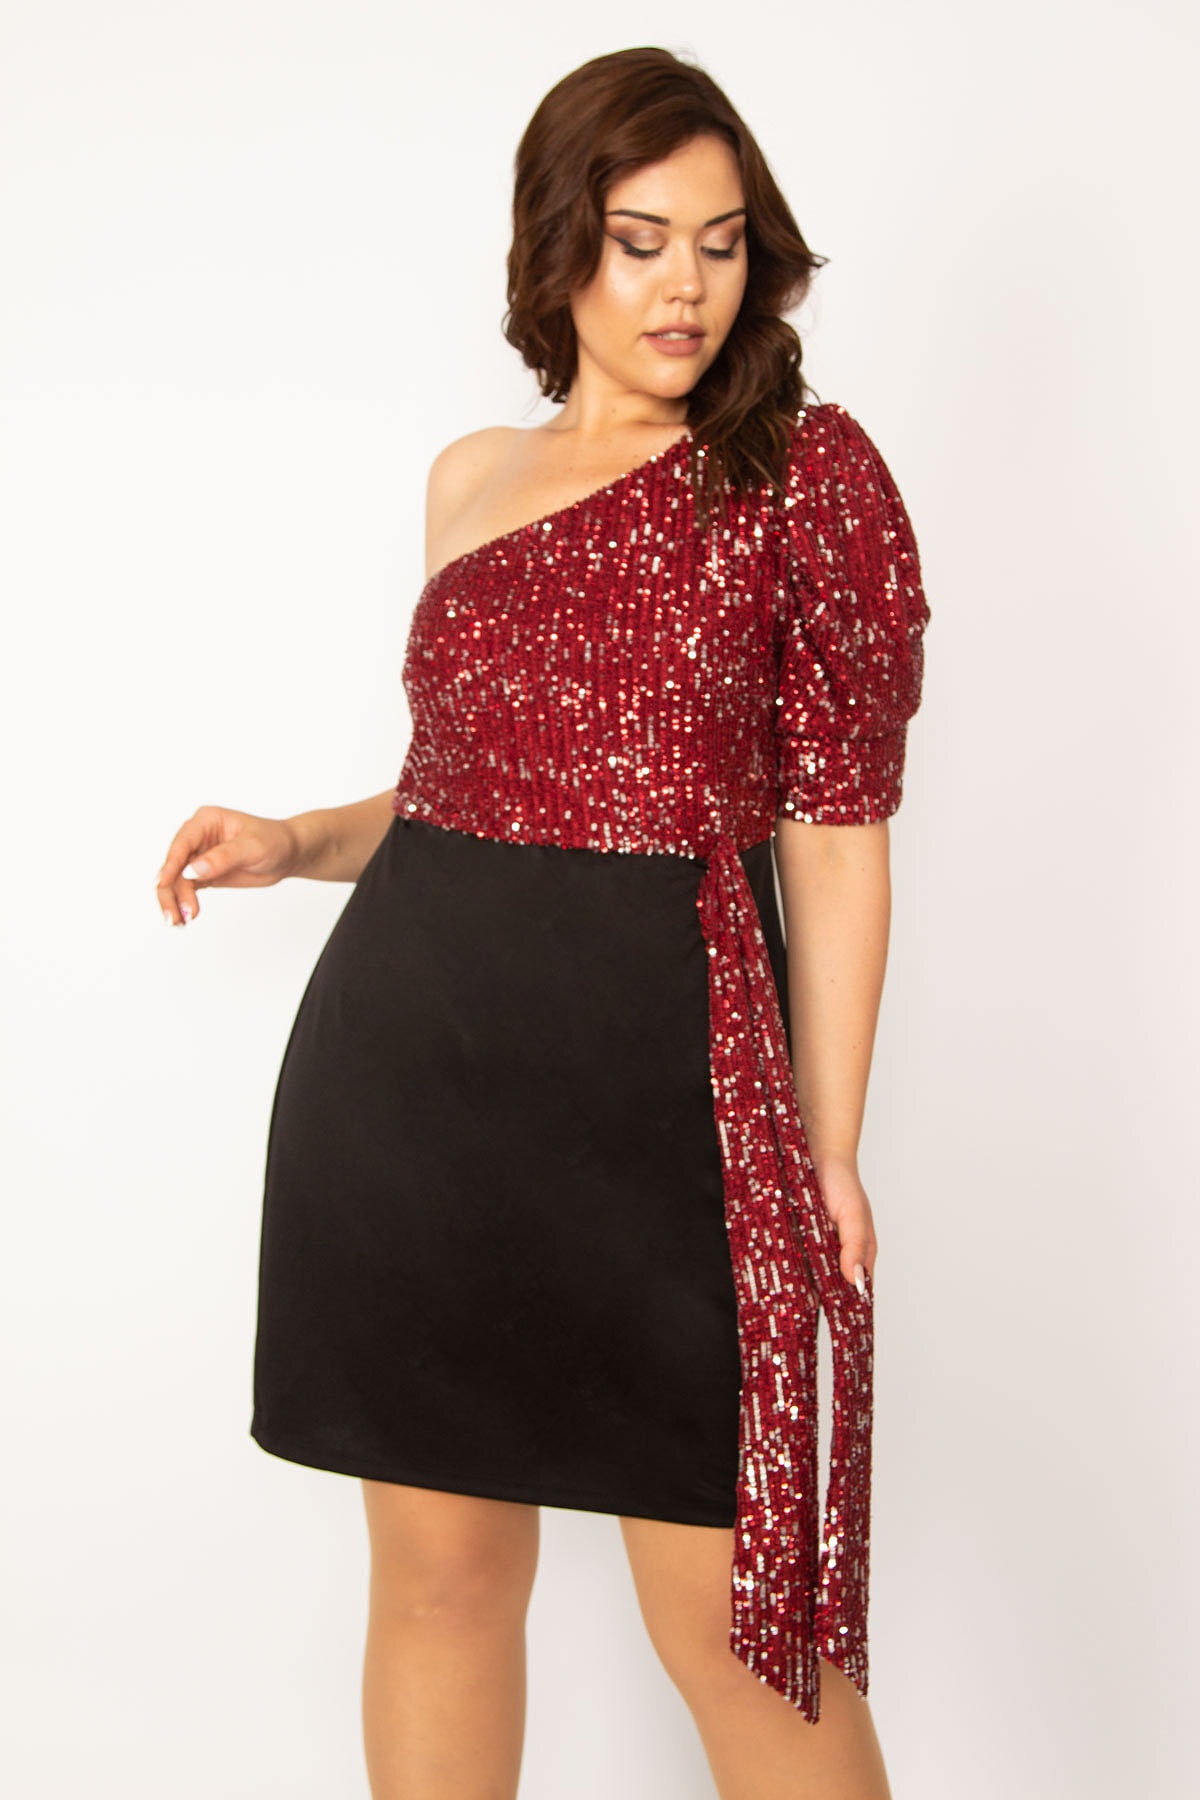 Levně Şans Women's Plus Size Claret Red Top Sequin One-Shoulder Evening Dress